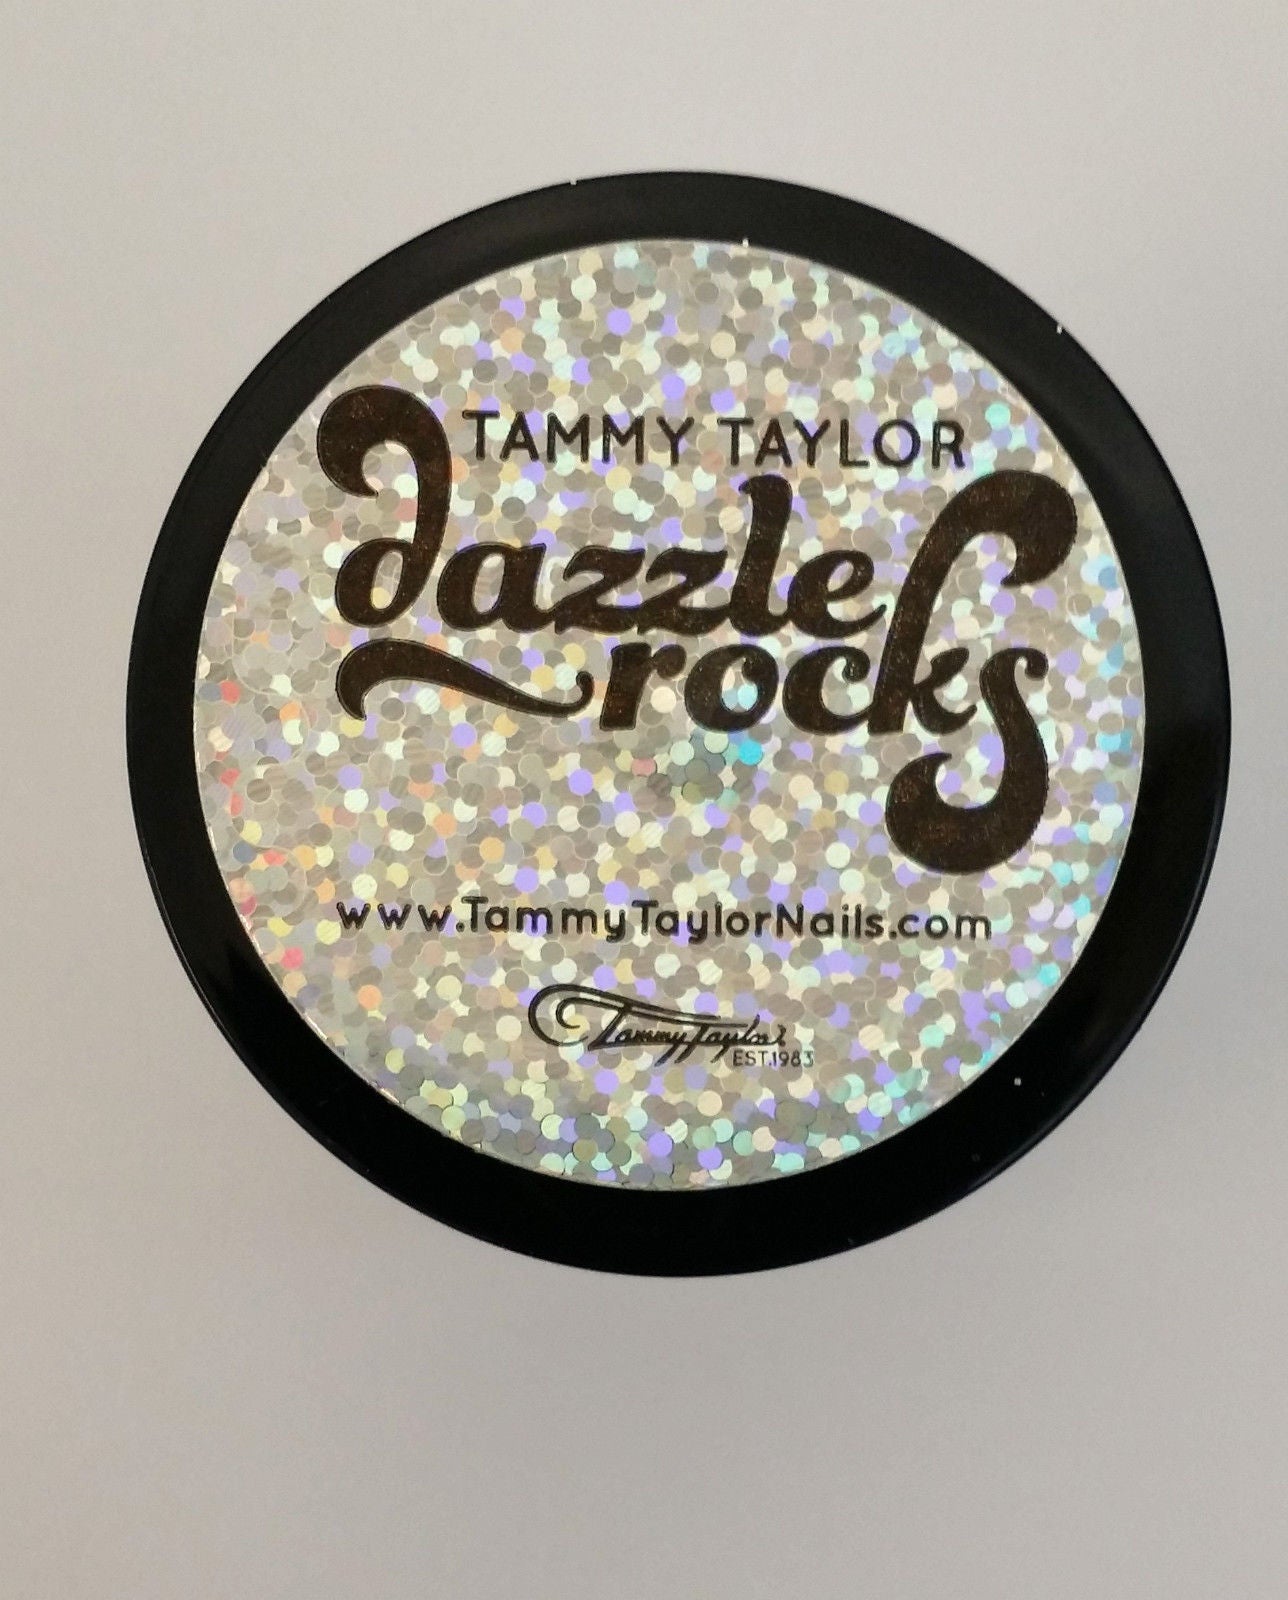 Tammy Taylor Dazzle Rocks LUZ DE LUNA (ORO) - 1oz 